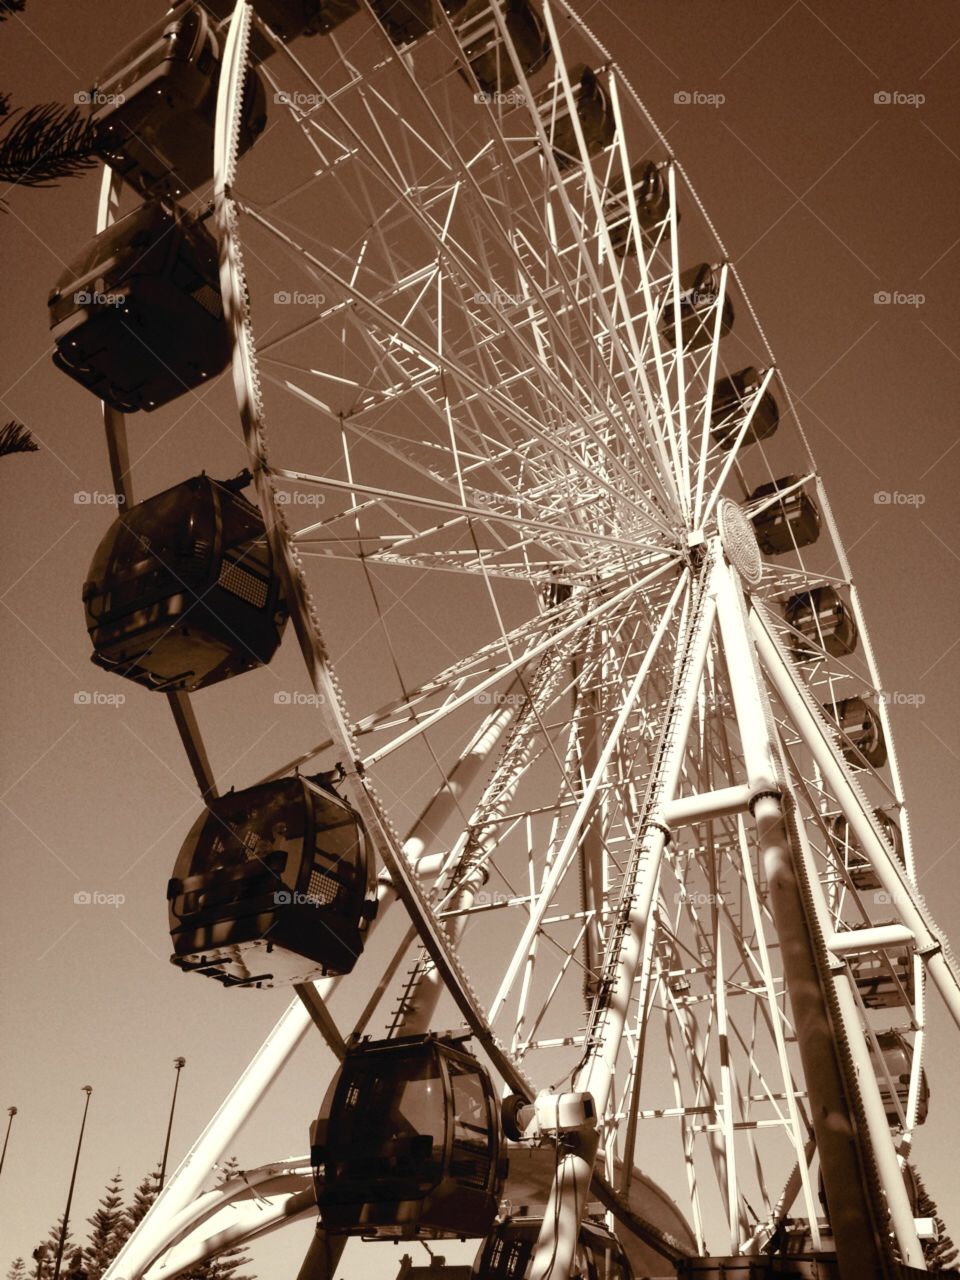 Ferris Wheel . Eye of Perth